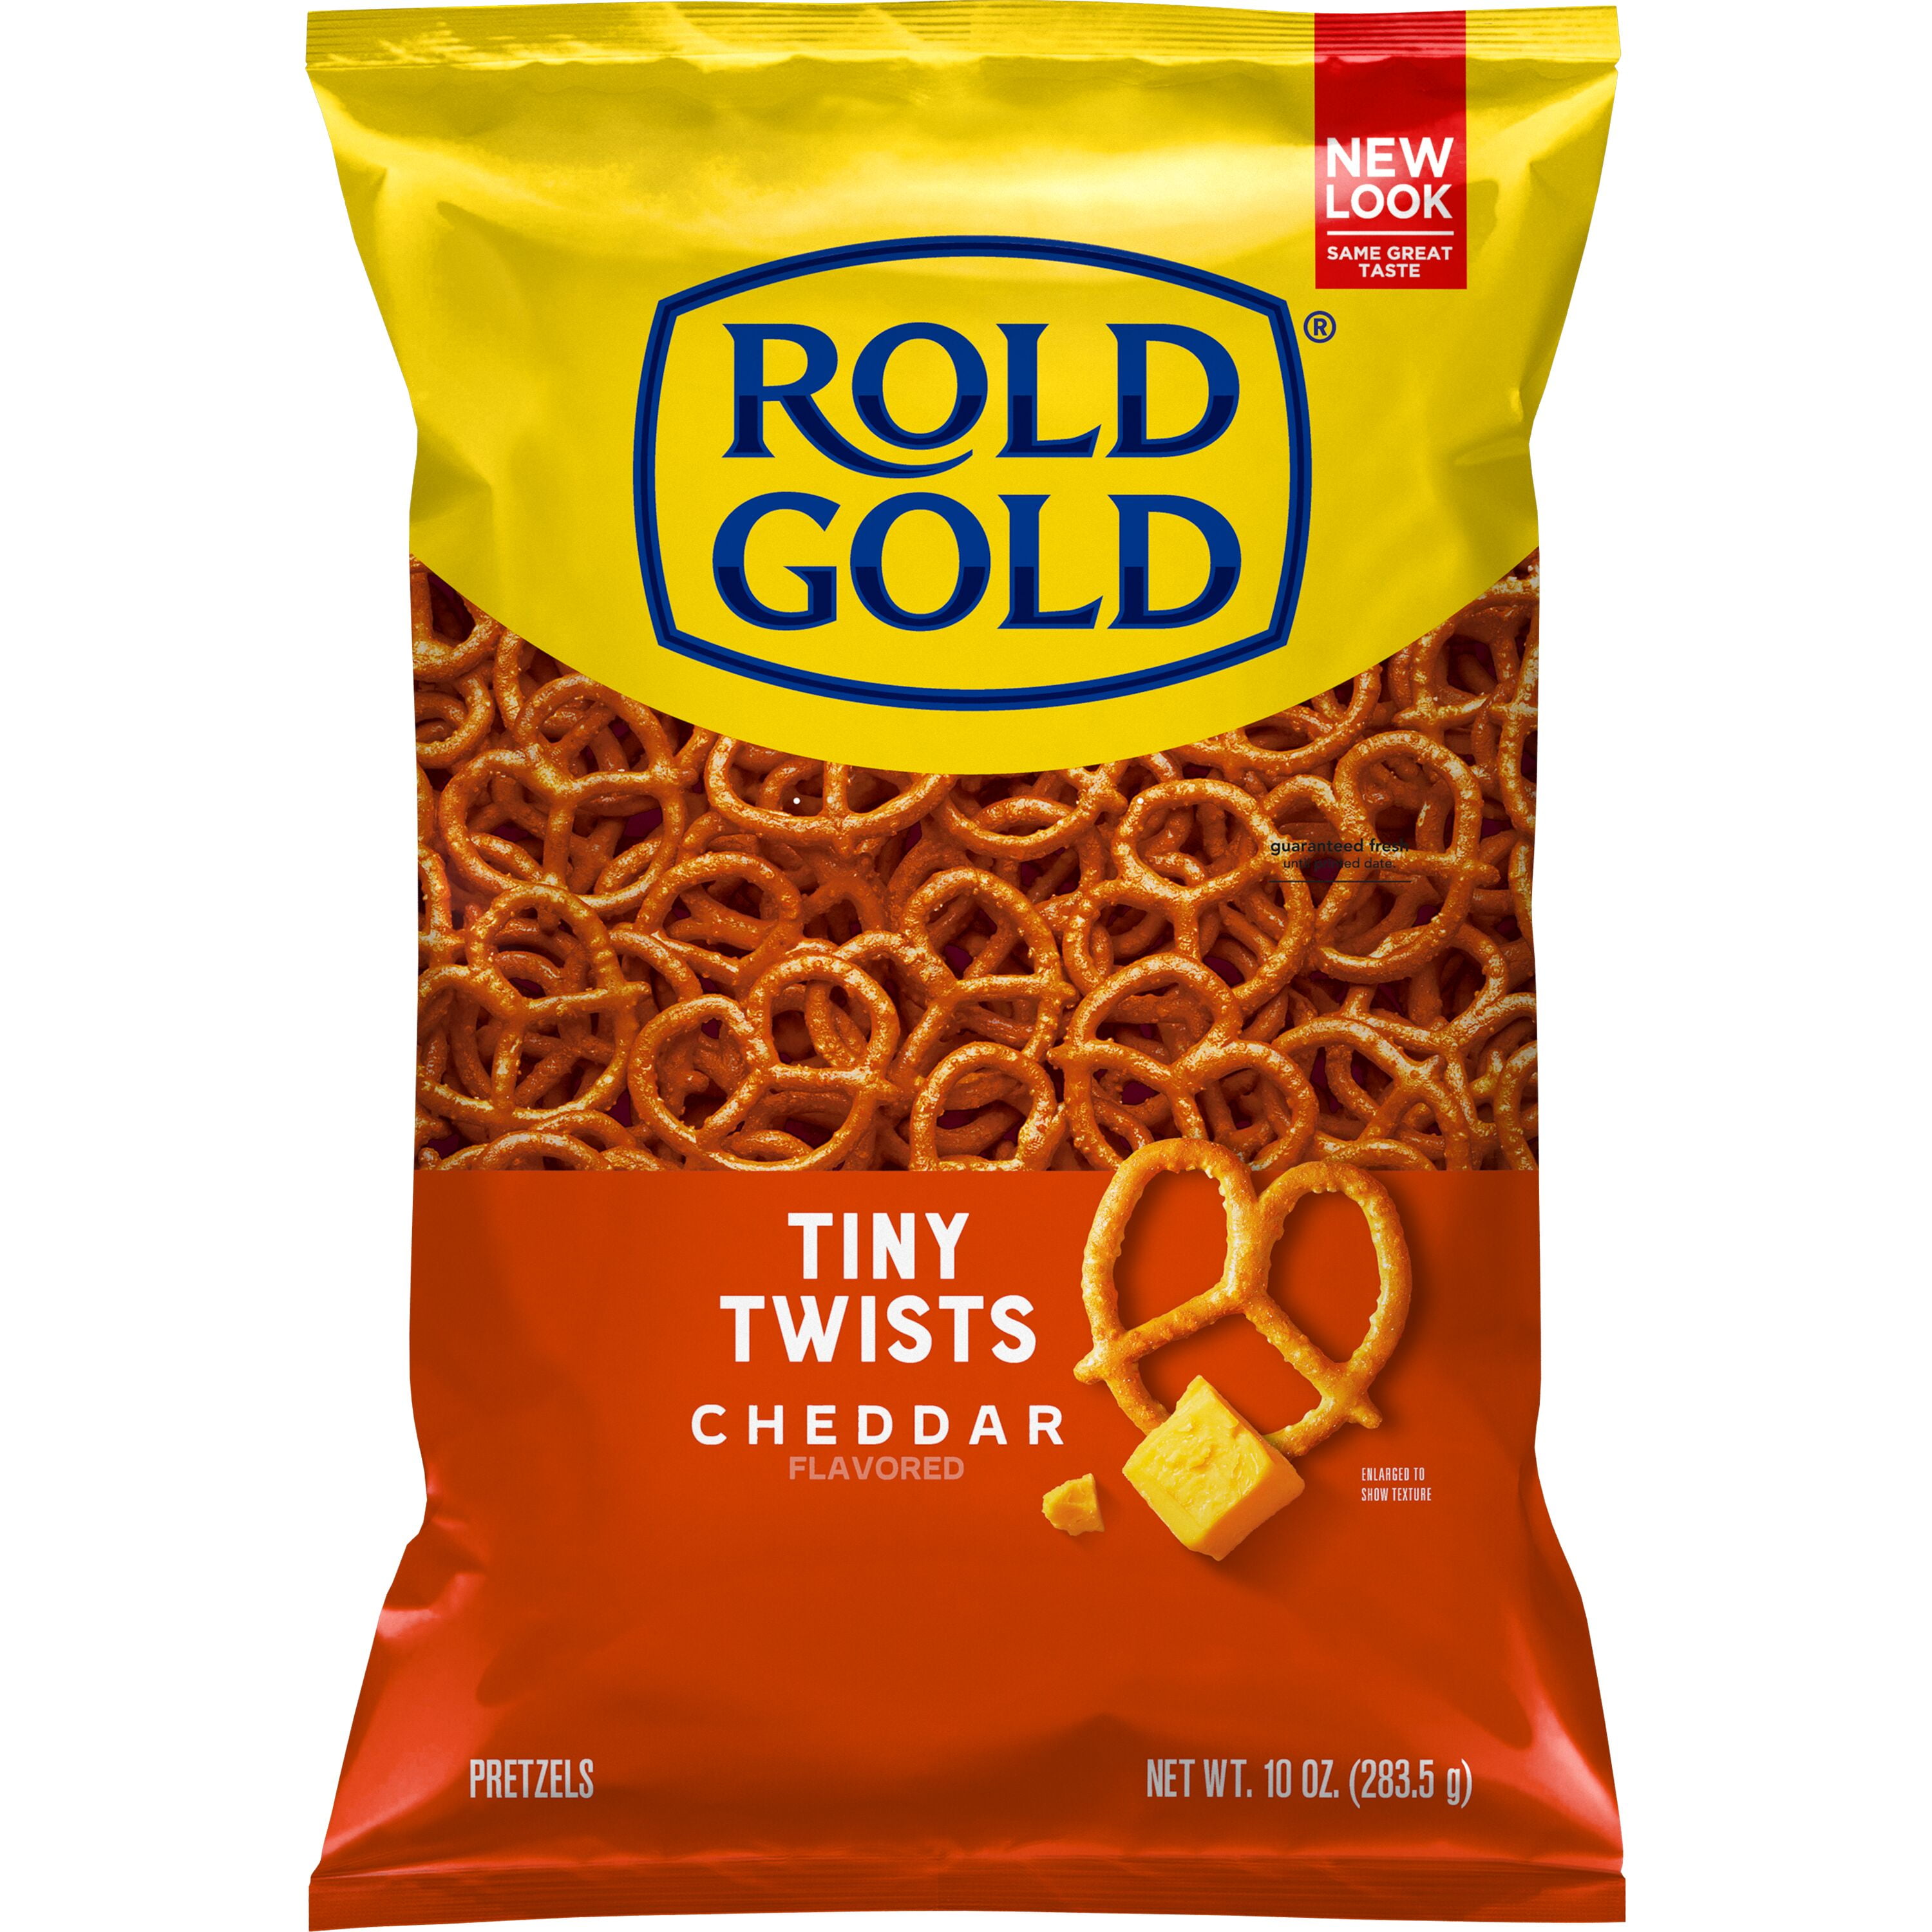 Rold Gold Tiny Twists Cheddar Flavored Pretzels, 10 Oz.